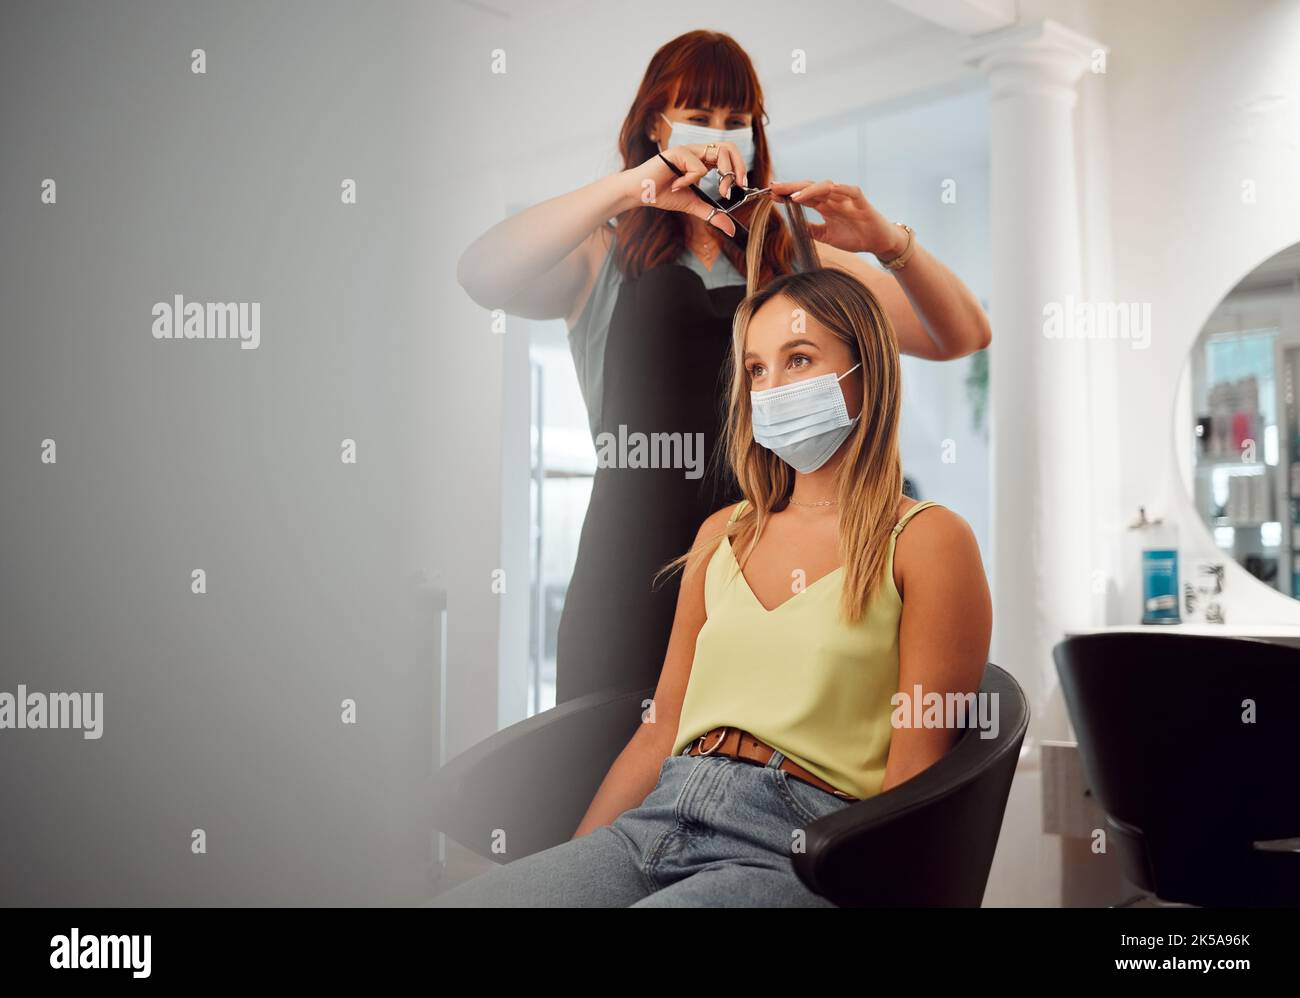 Covid, Maske und Friseur Frauen im Salon mit Schutz für professionelle  Haarpflege Geschäft. Los Angeles Friseur beschäftigt Schneiden mit  medizinischen Stockfotografie - Alamy